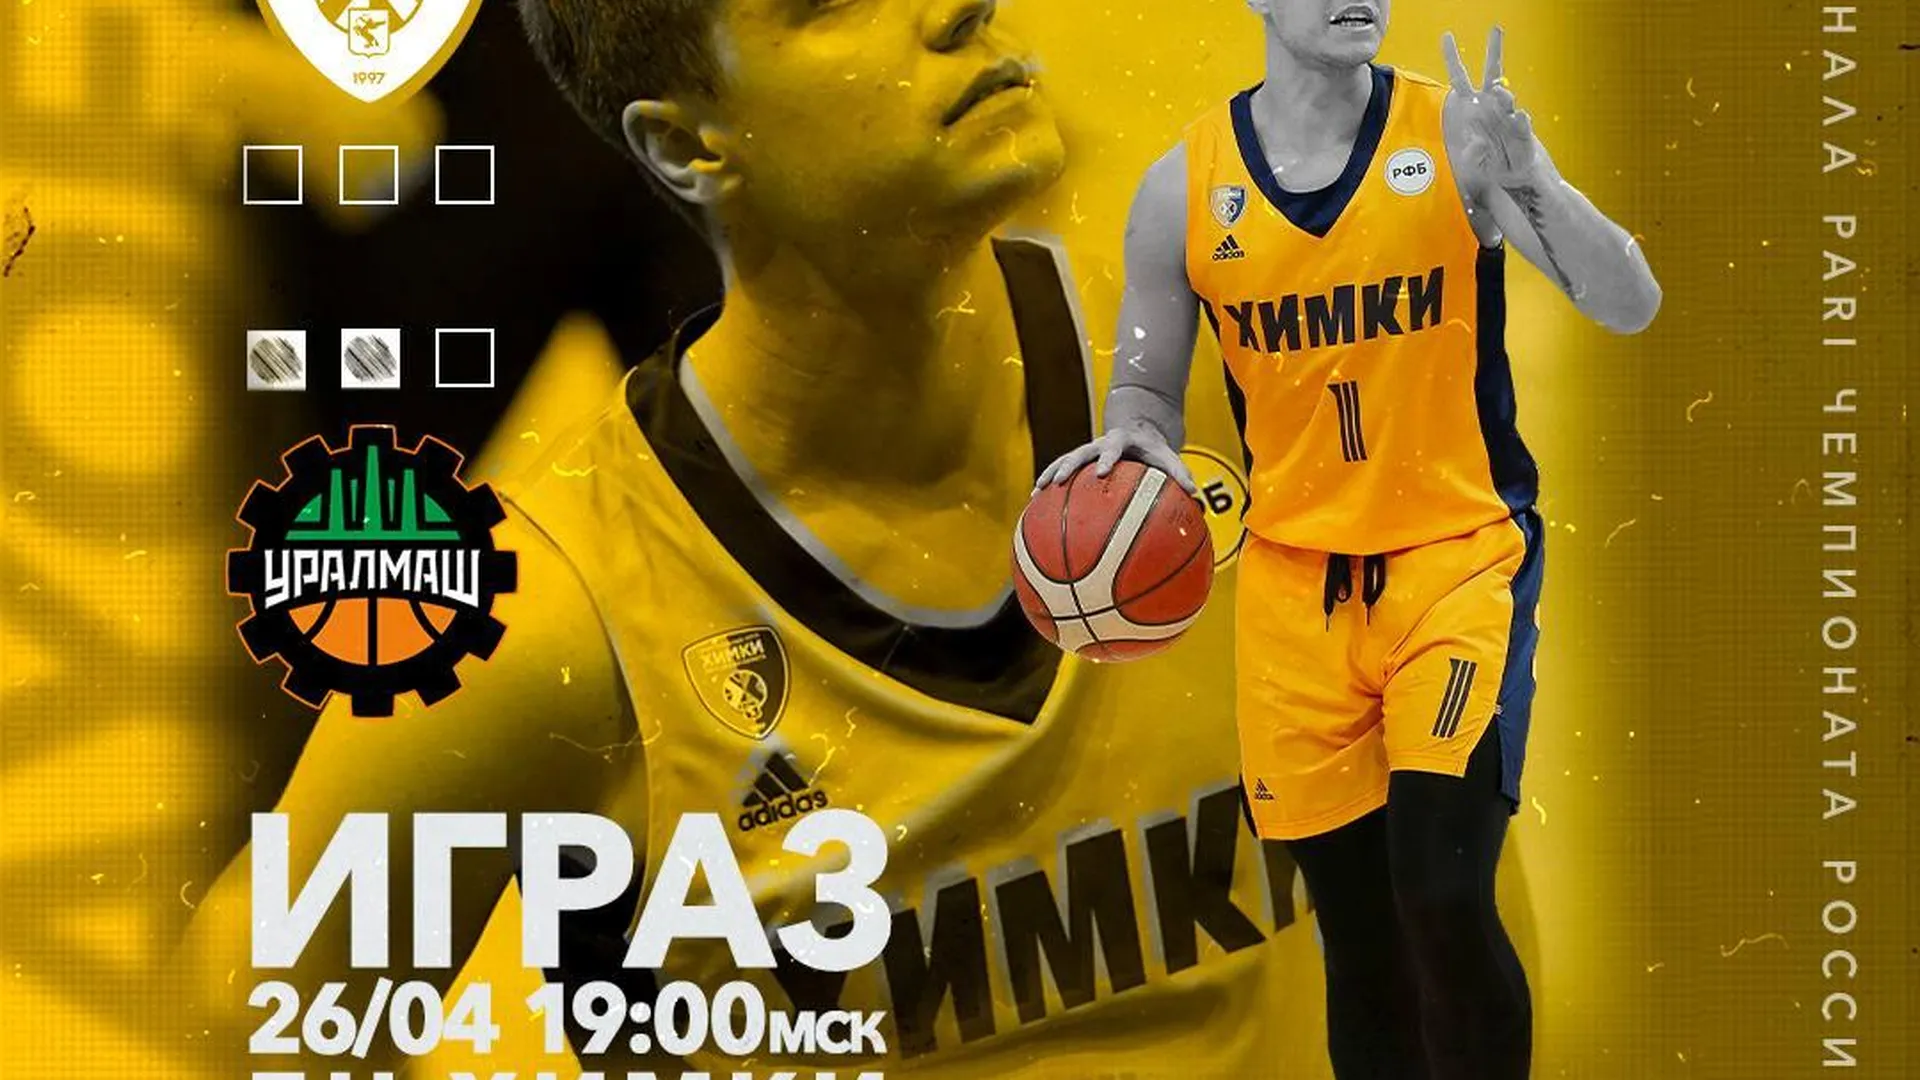 Баскетбольный клуб «Химки» сыграет домашний матч с «Уралмашем» в полуфинальной серии Суперлиги